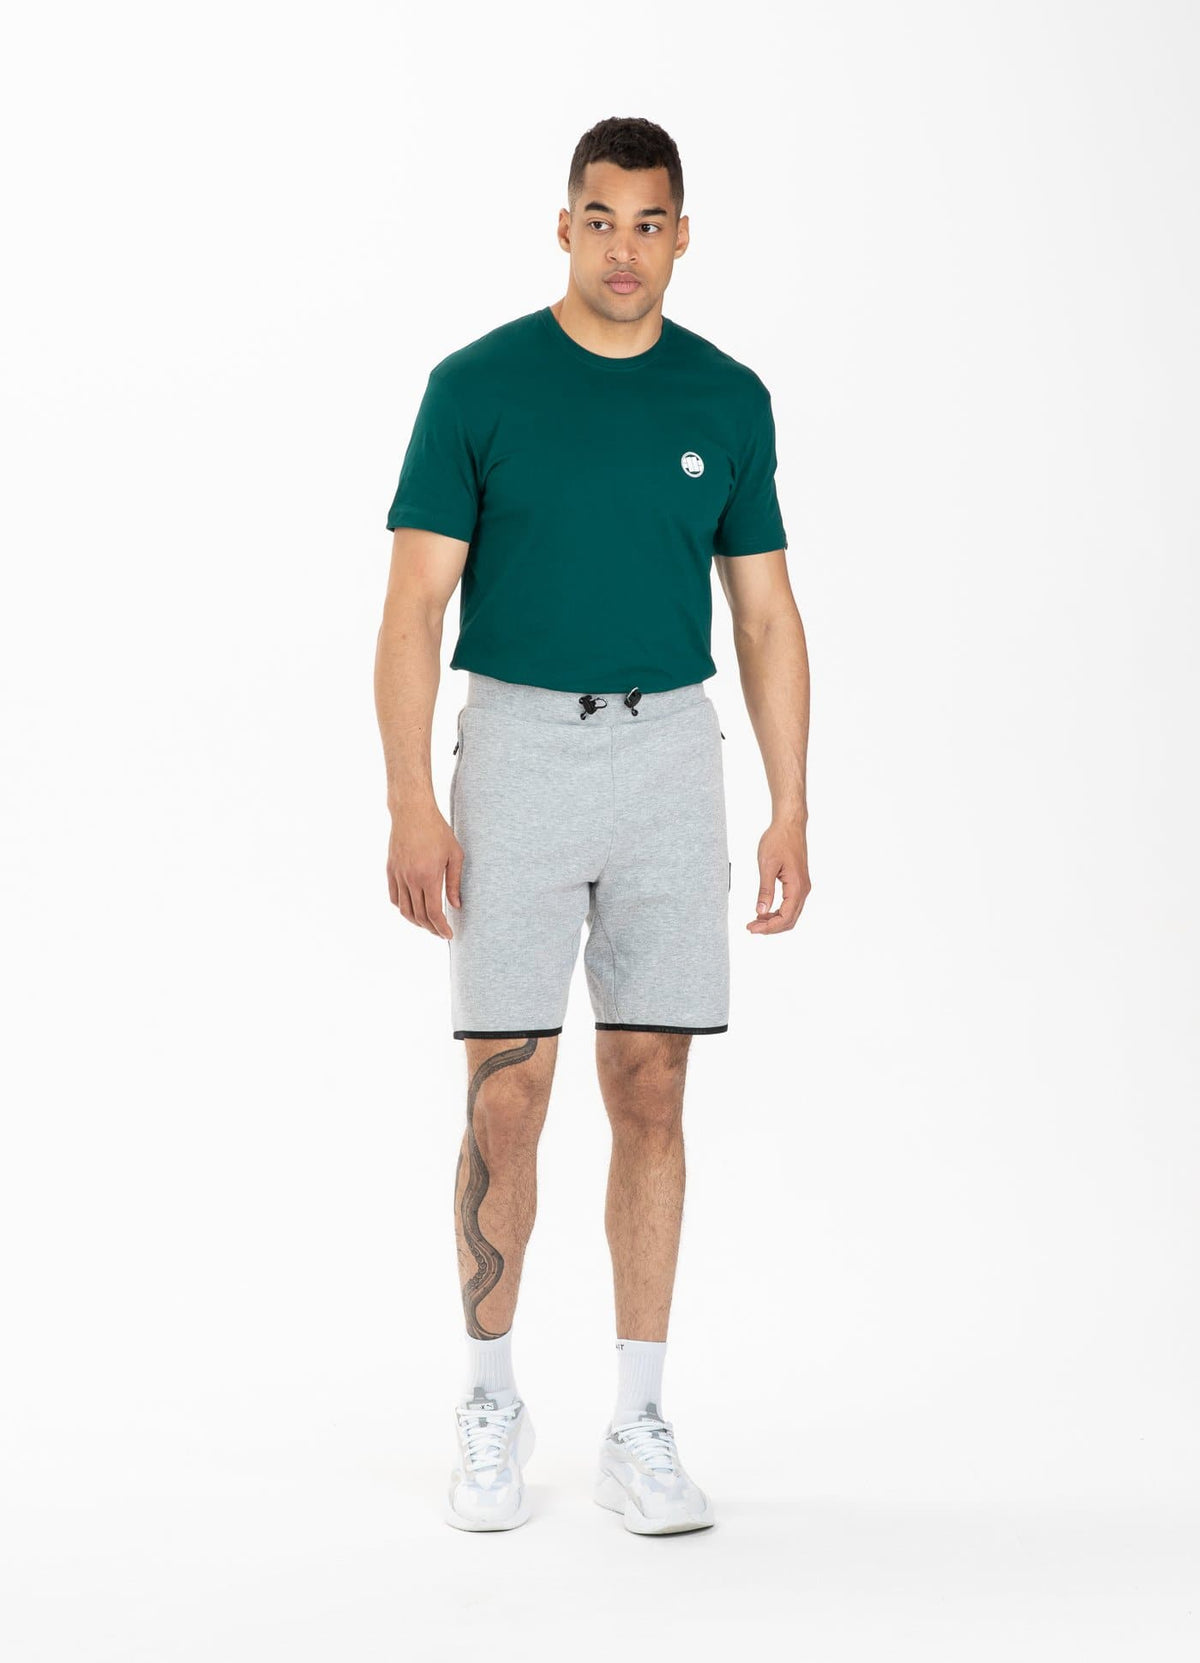 Shorts CLANTON Grey Melange - Pitbull West Coast International Store 